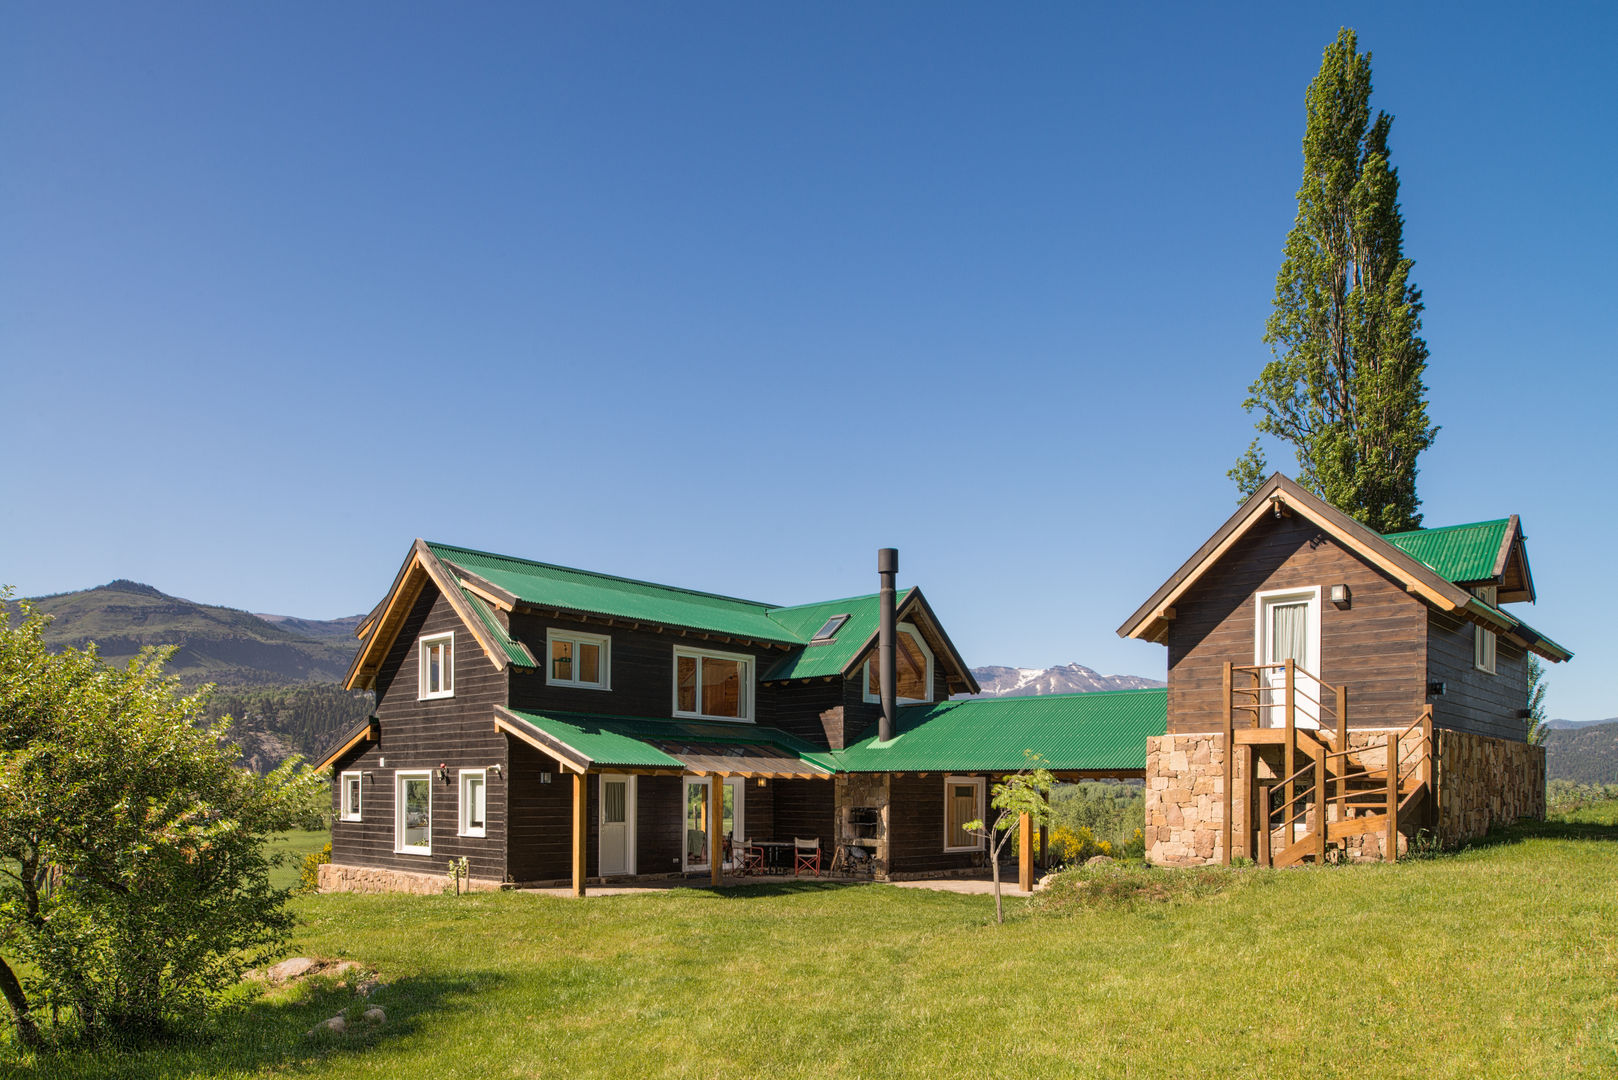 Casa de madera en San Martin de los Andes, Patagonia Log Homes - Arquitectos - Neuquén Patagonia Log Homes - Arquitectos - Neuquén Rumah kayu Parket Multicolored